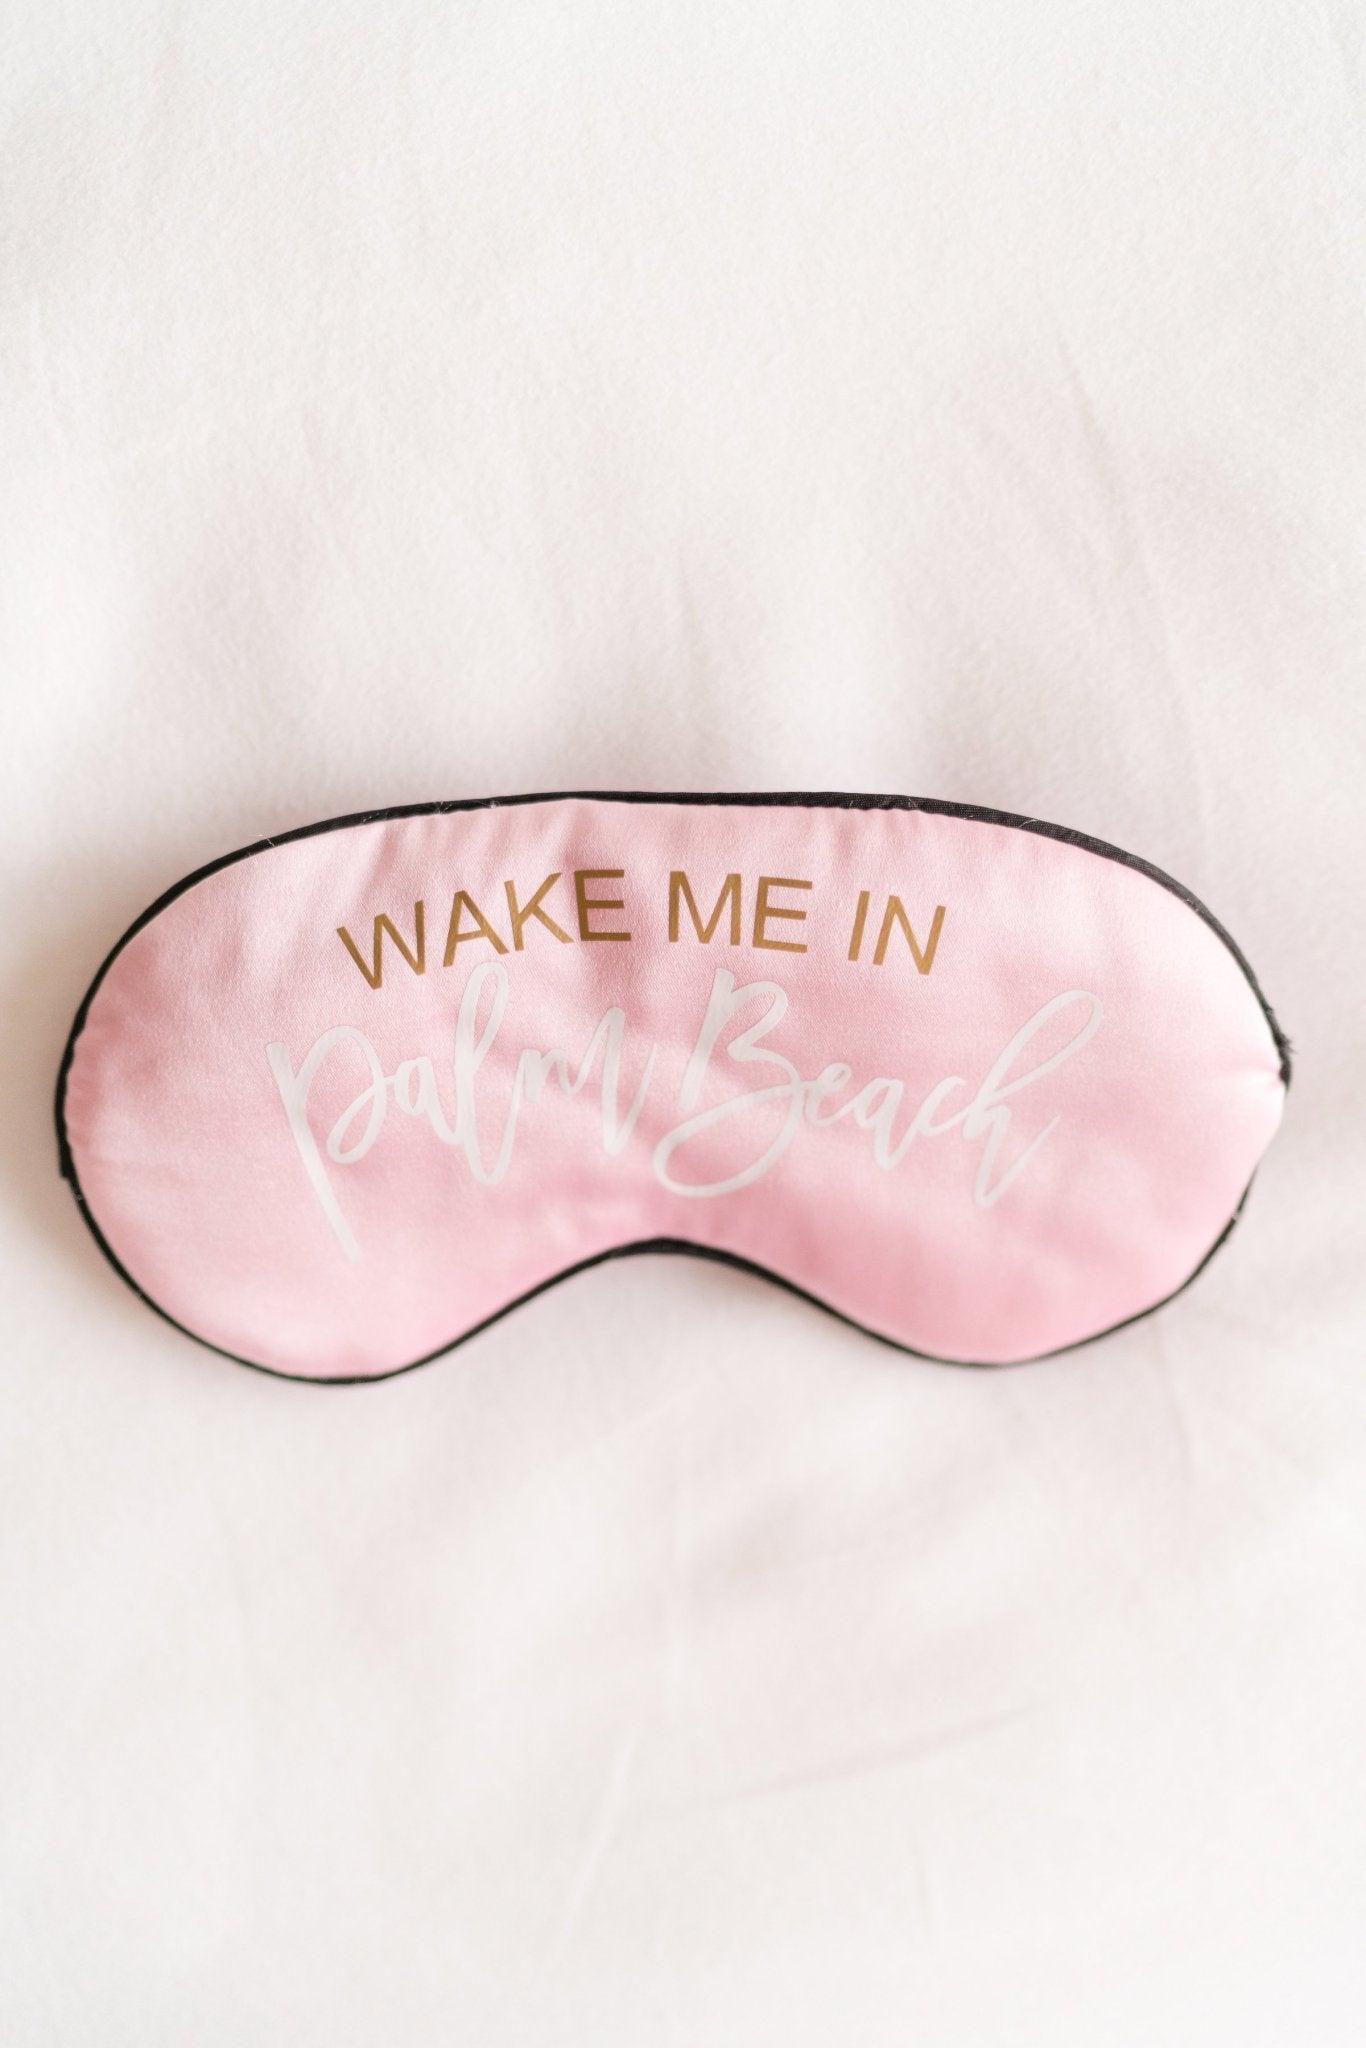 Wake Me in Palm Beach Sleep Mask